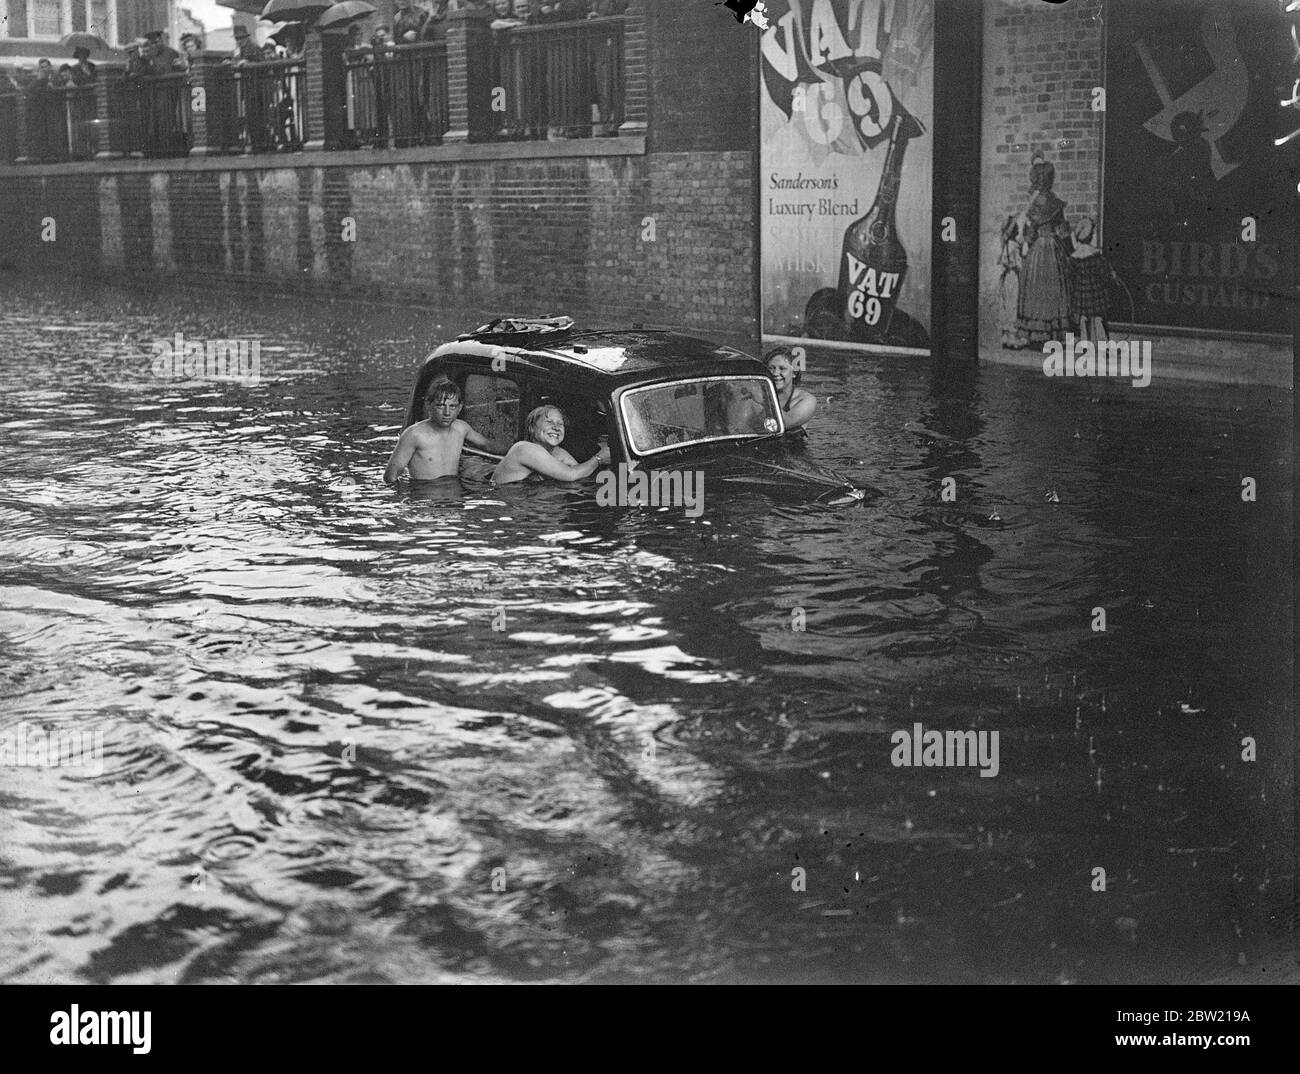 Nadadores alrededor de vehículos sumergidos en las mayores inundaciones registradas en Kingston, la ciudad ocupada y la carretera de Portsmouth fueron inundados después de la tormenta que estalló de repente en los condados de Home. 13 de agosto de 1937. Foto de stock